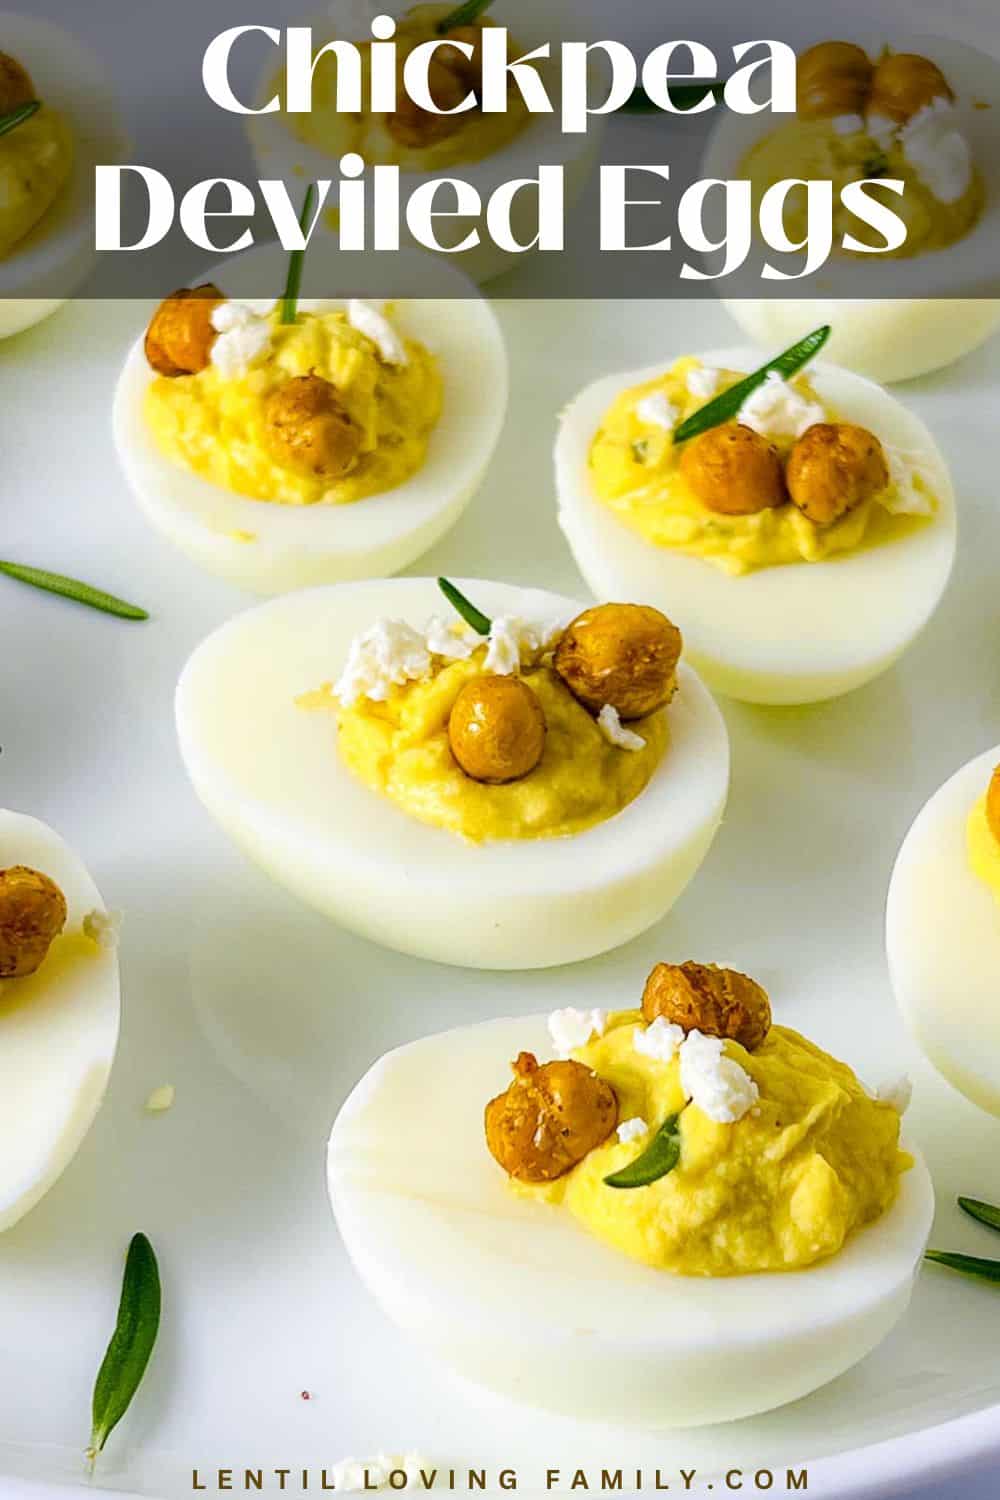 Chickpea deviled eggs Pinterest image.